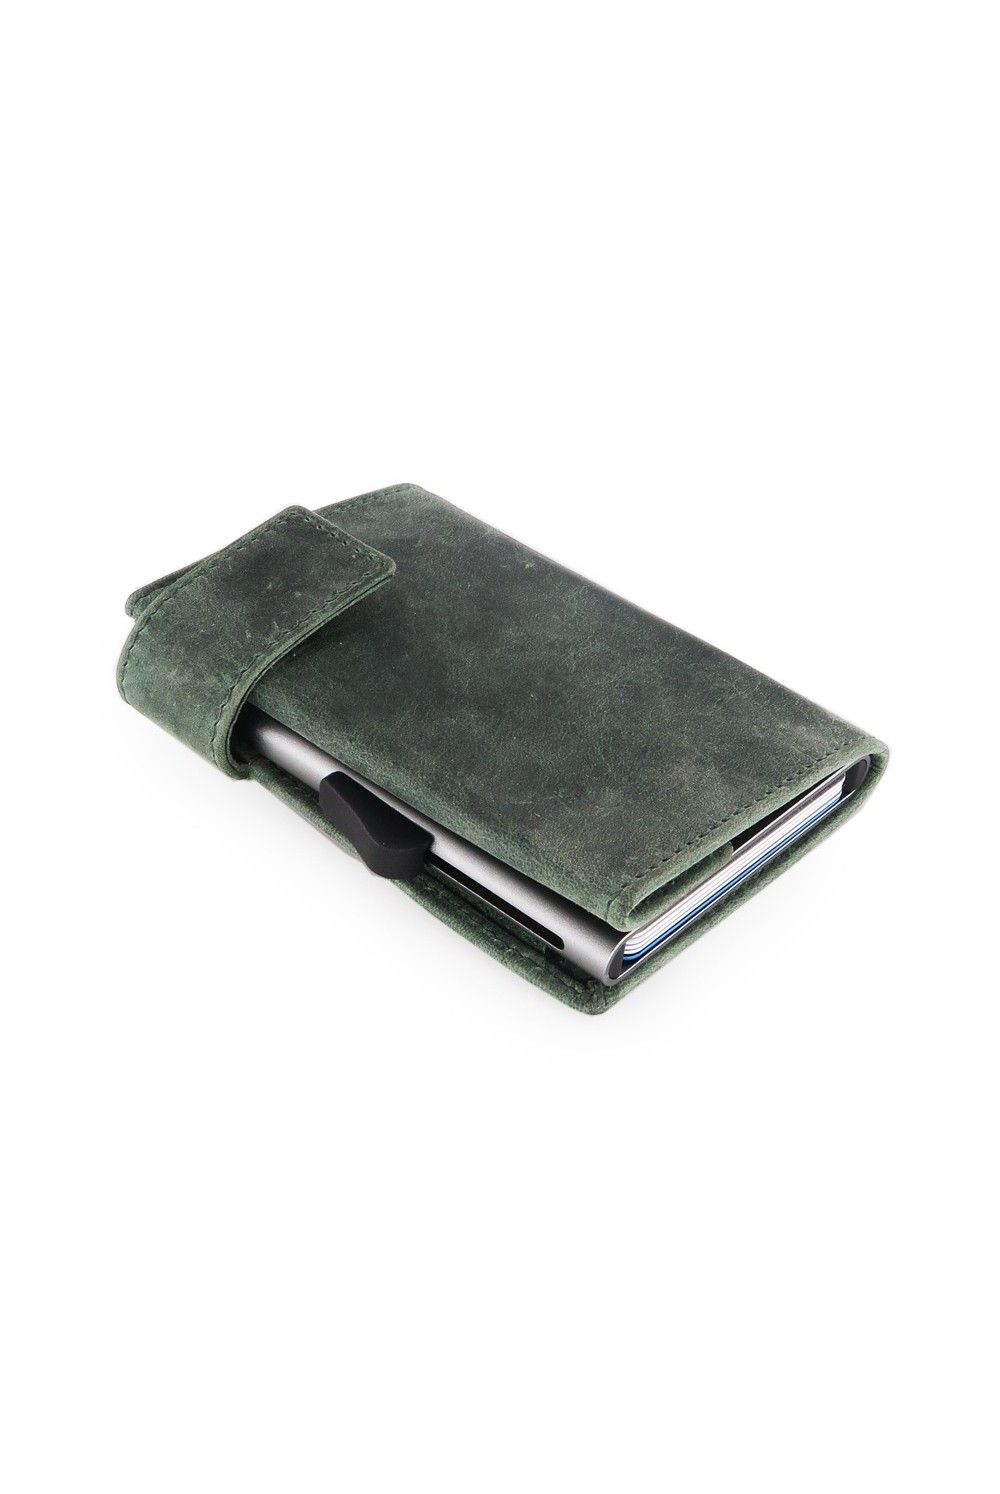 Porte-cartes SecWal DK Leather Hunter Vert